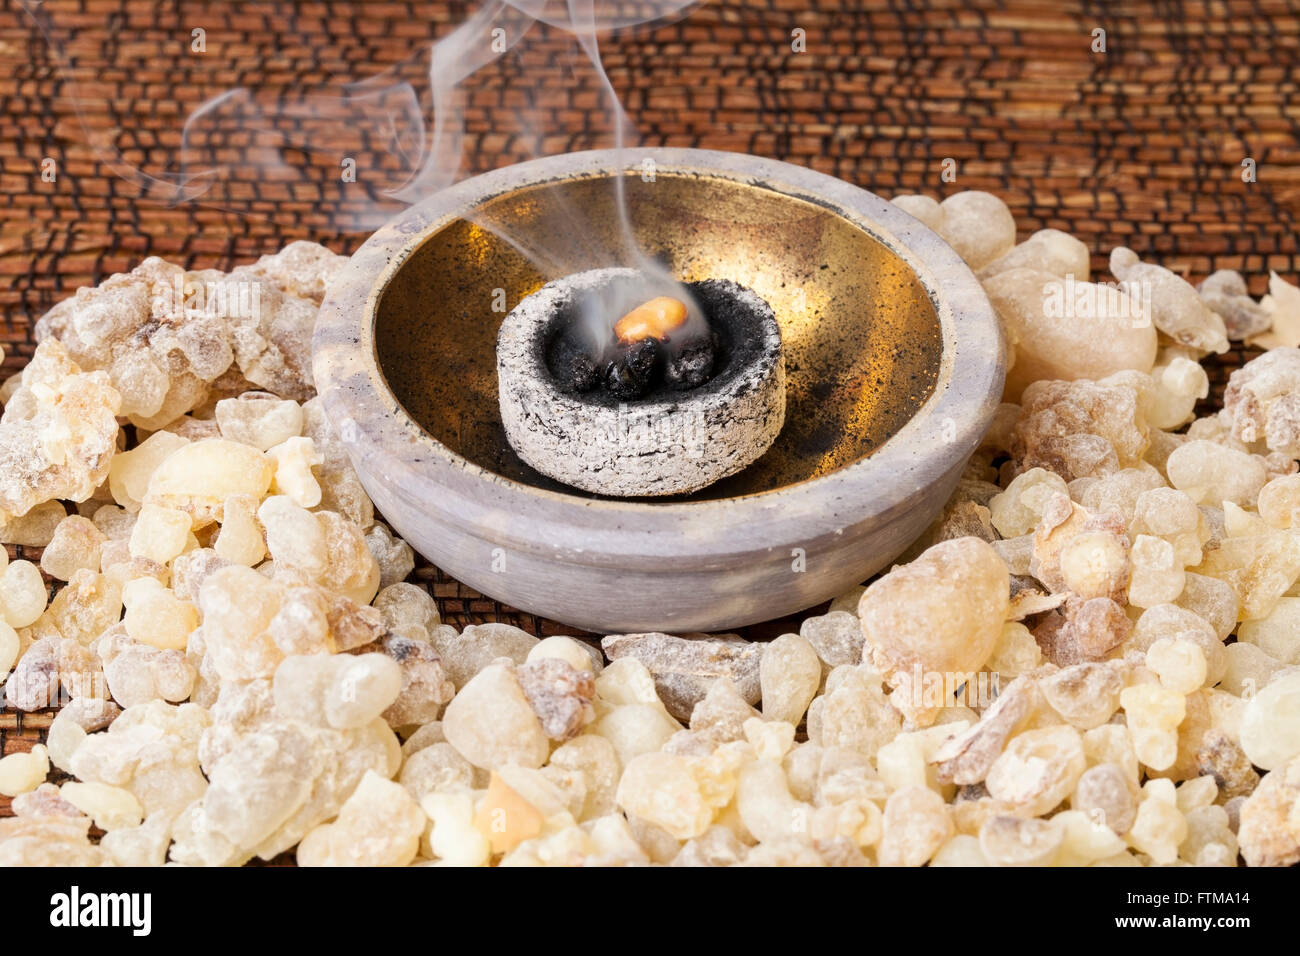 Incenso la masterizzazione su un caldo del carbone. Incenso è una resina aromatica, usato per i riti religiosi, incenso e profumi. Foto Stock